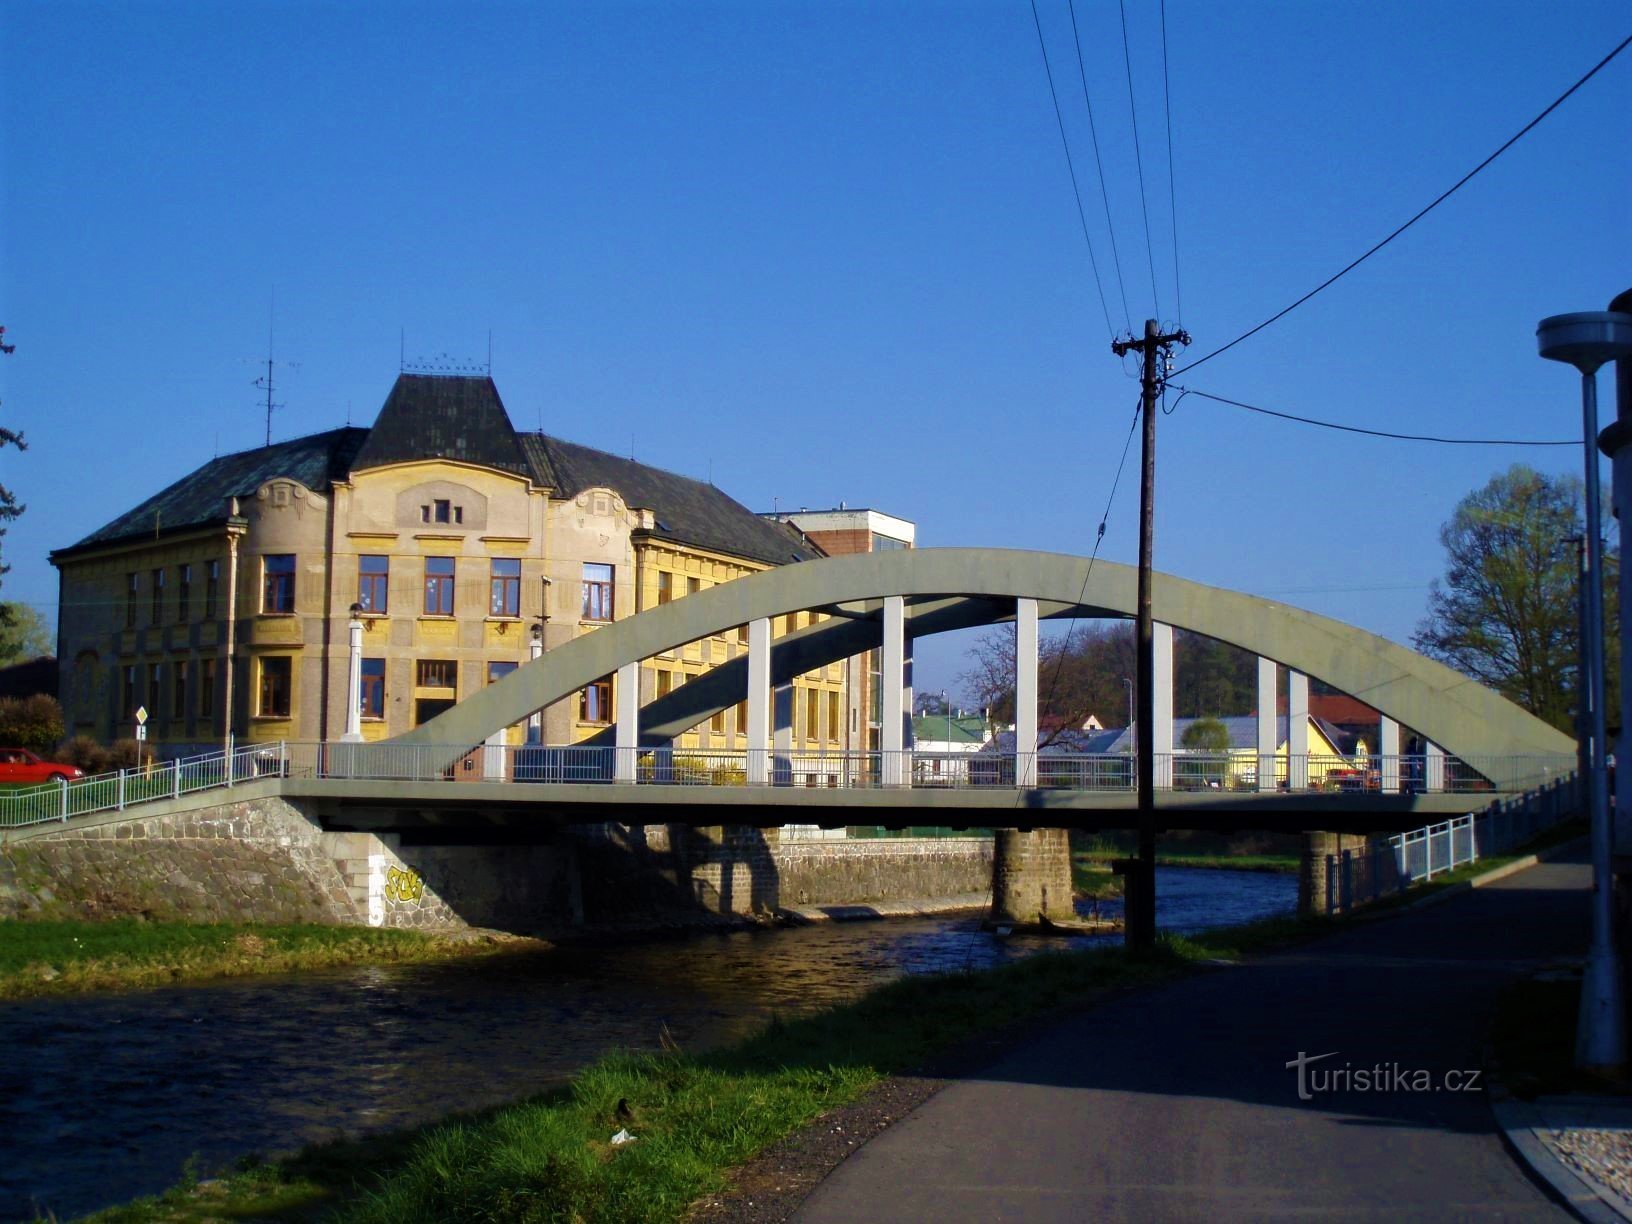 Škola čp. 52 a most přes Orlici (Doudleby nad Orlicí, 15.4.2009)